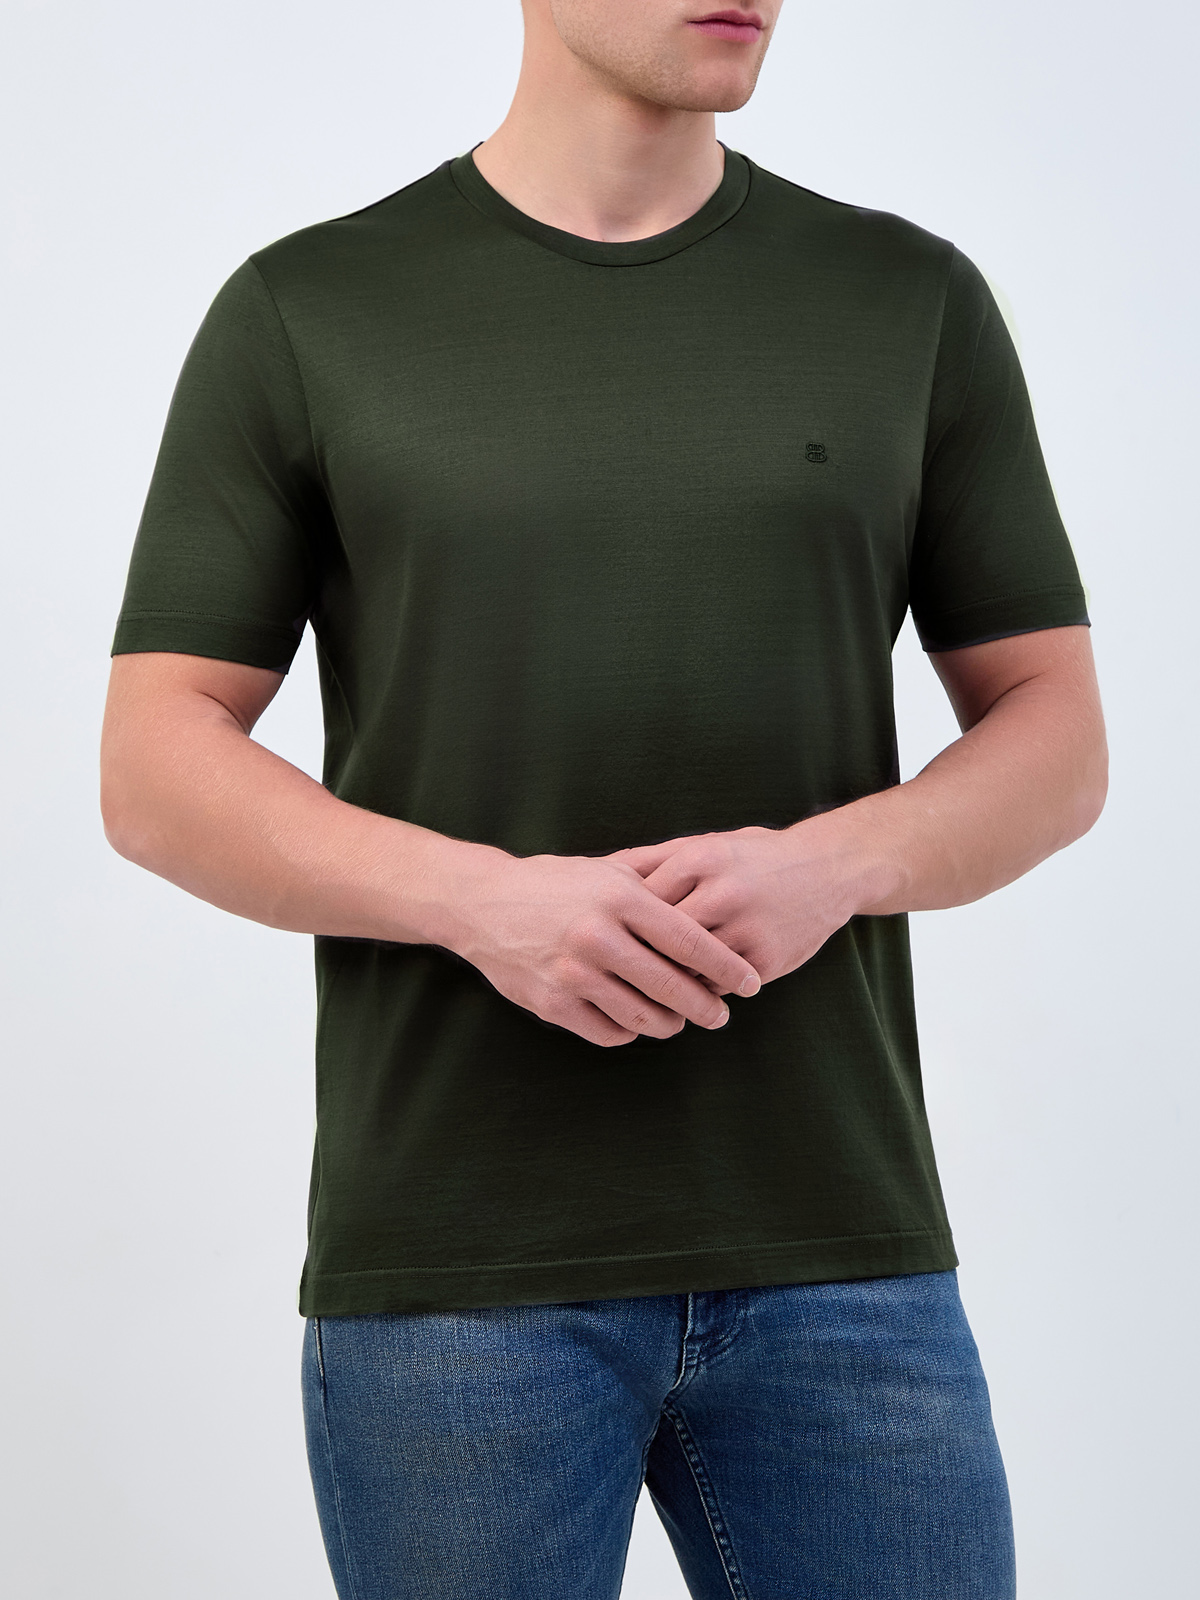 Хлопковая футболка из гладкого джерси с логотипом в тон BERTOLO, цвет зеленый, размер 52;54;56;58 - фото 3